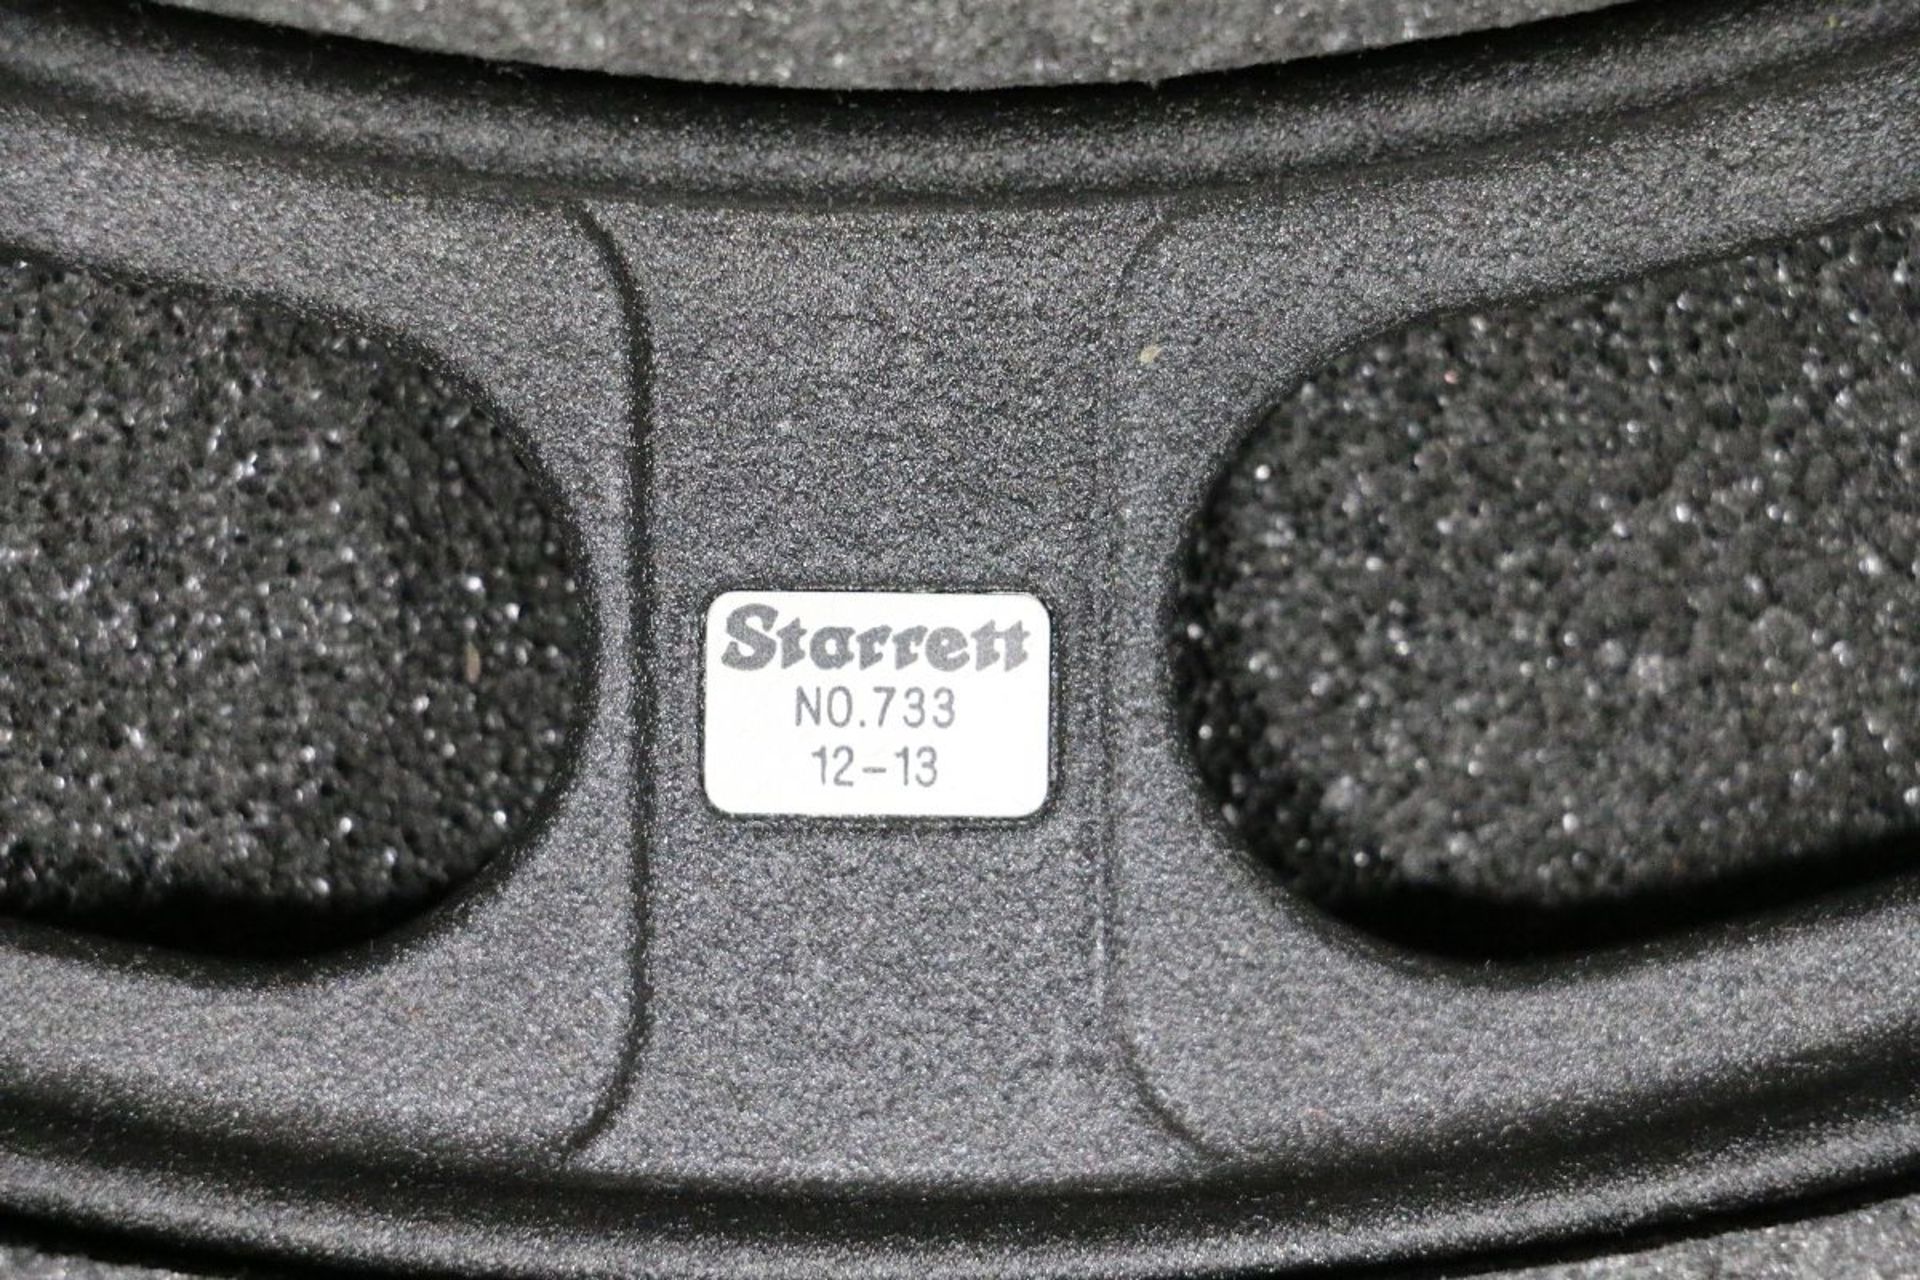 Starrett Model No. 733 12-13" Digital Outside Micrometer - Image 3 of 4